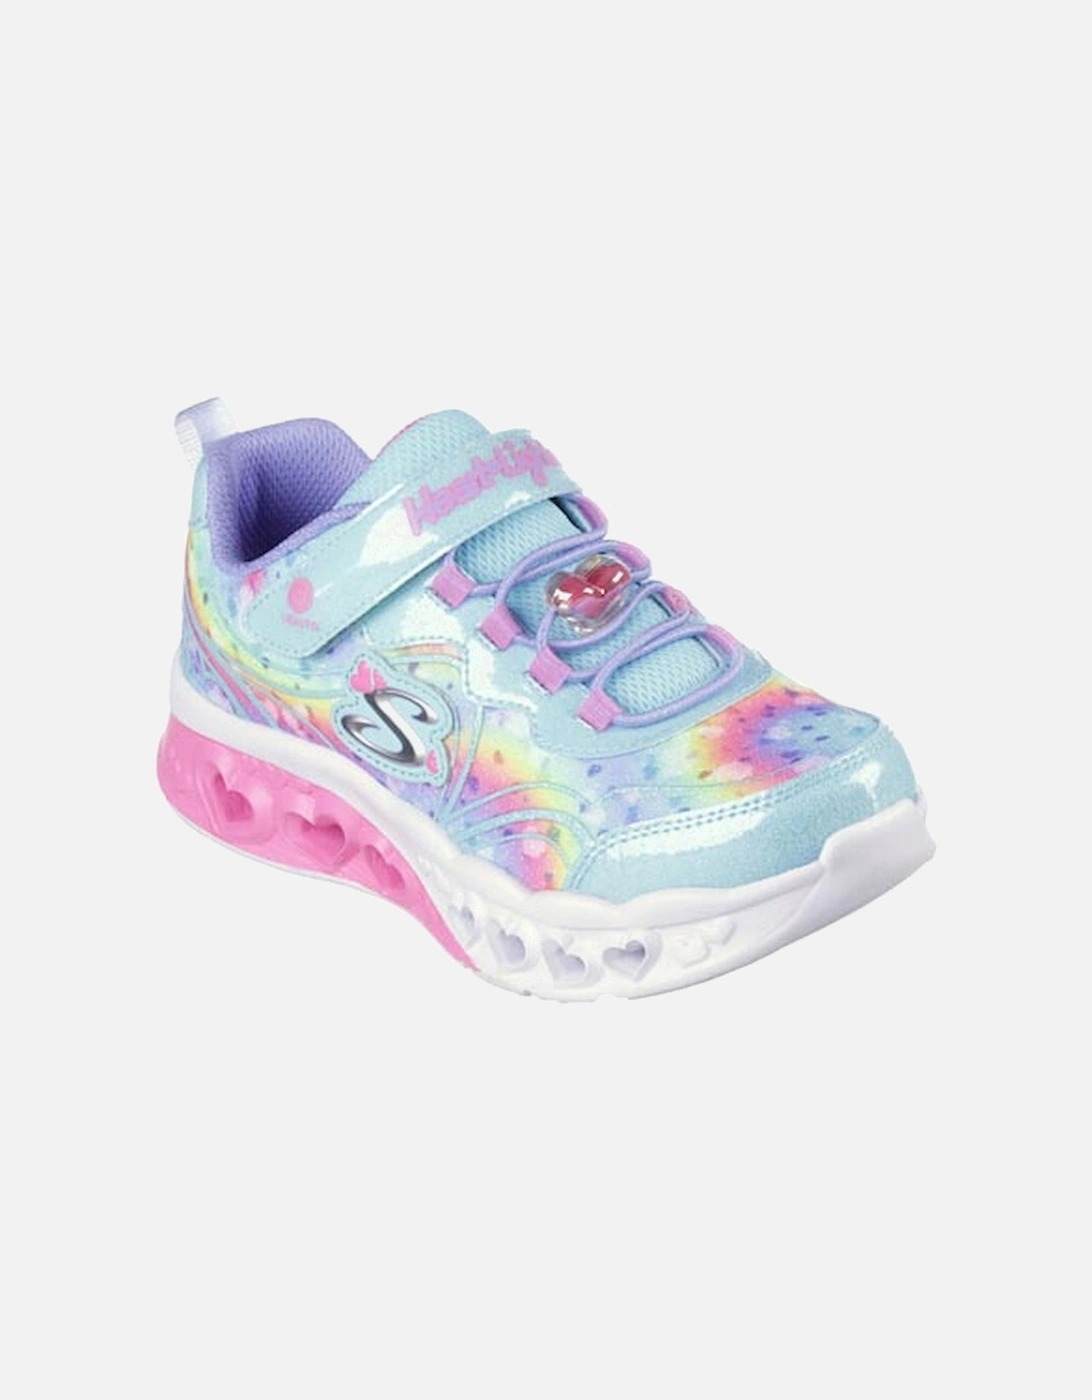 Girl's Flutter Heart Lights Groovy Swirl Sneaker Multi Glitter Print Turquoise/Hot Pink, 6 of 5